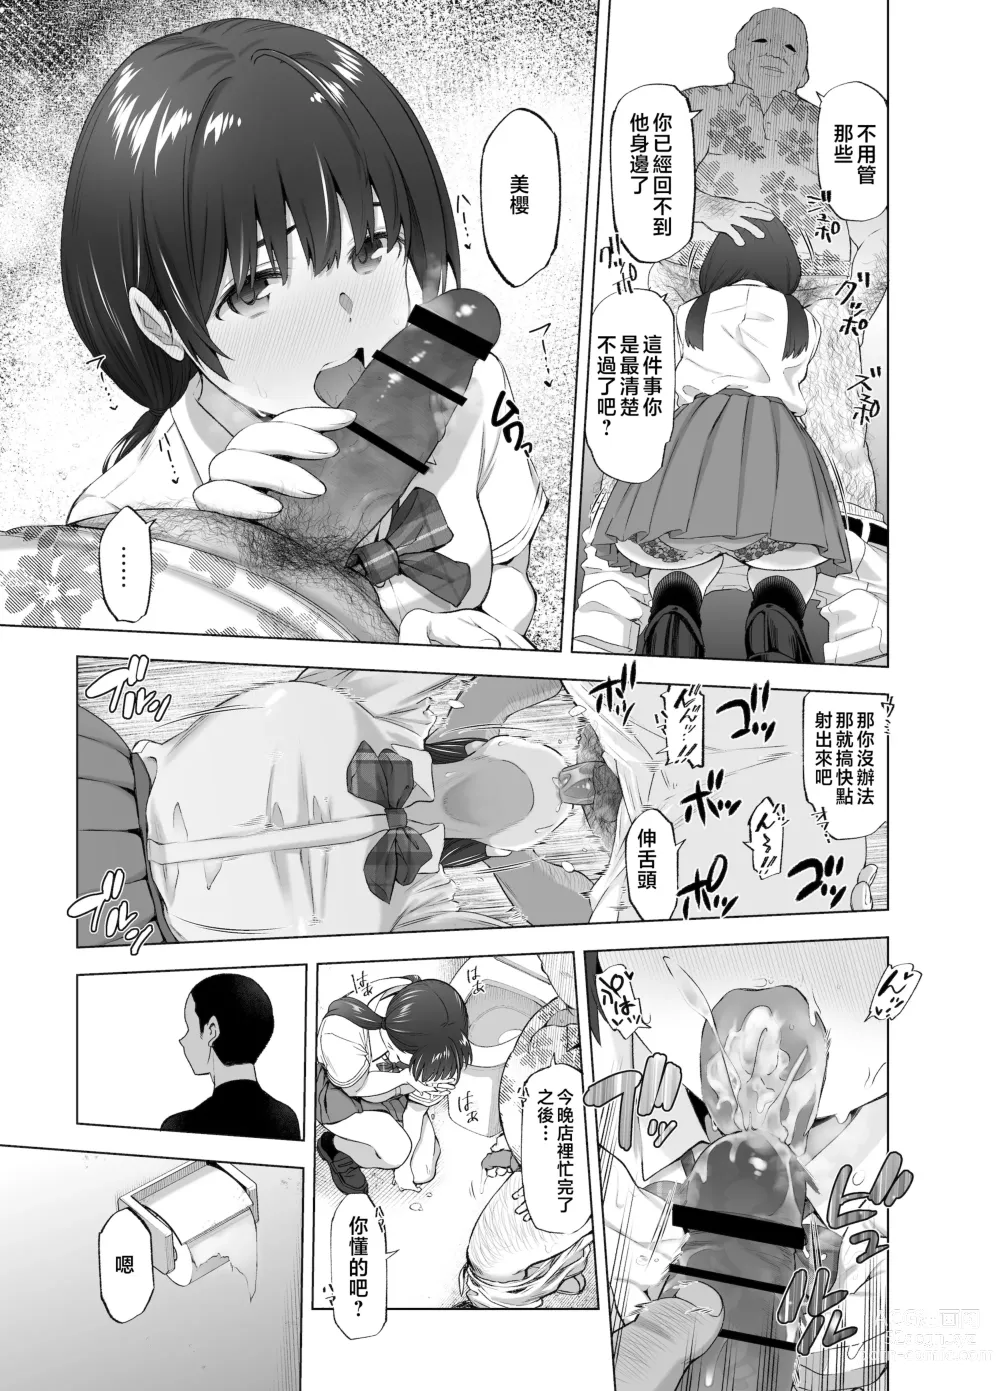 Page 36 of doujinshi Sakura Saku Chiru Hanabira Tsubomi Hokorobibu ~Ossan no Nikutsubo e to Ochi Hateta Saiai no Osananajimi Yoshioka Mio~